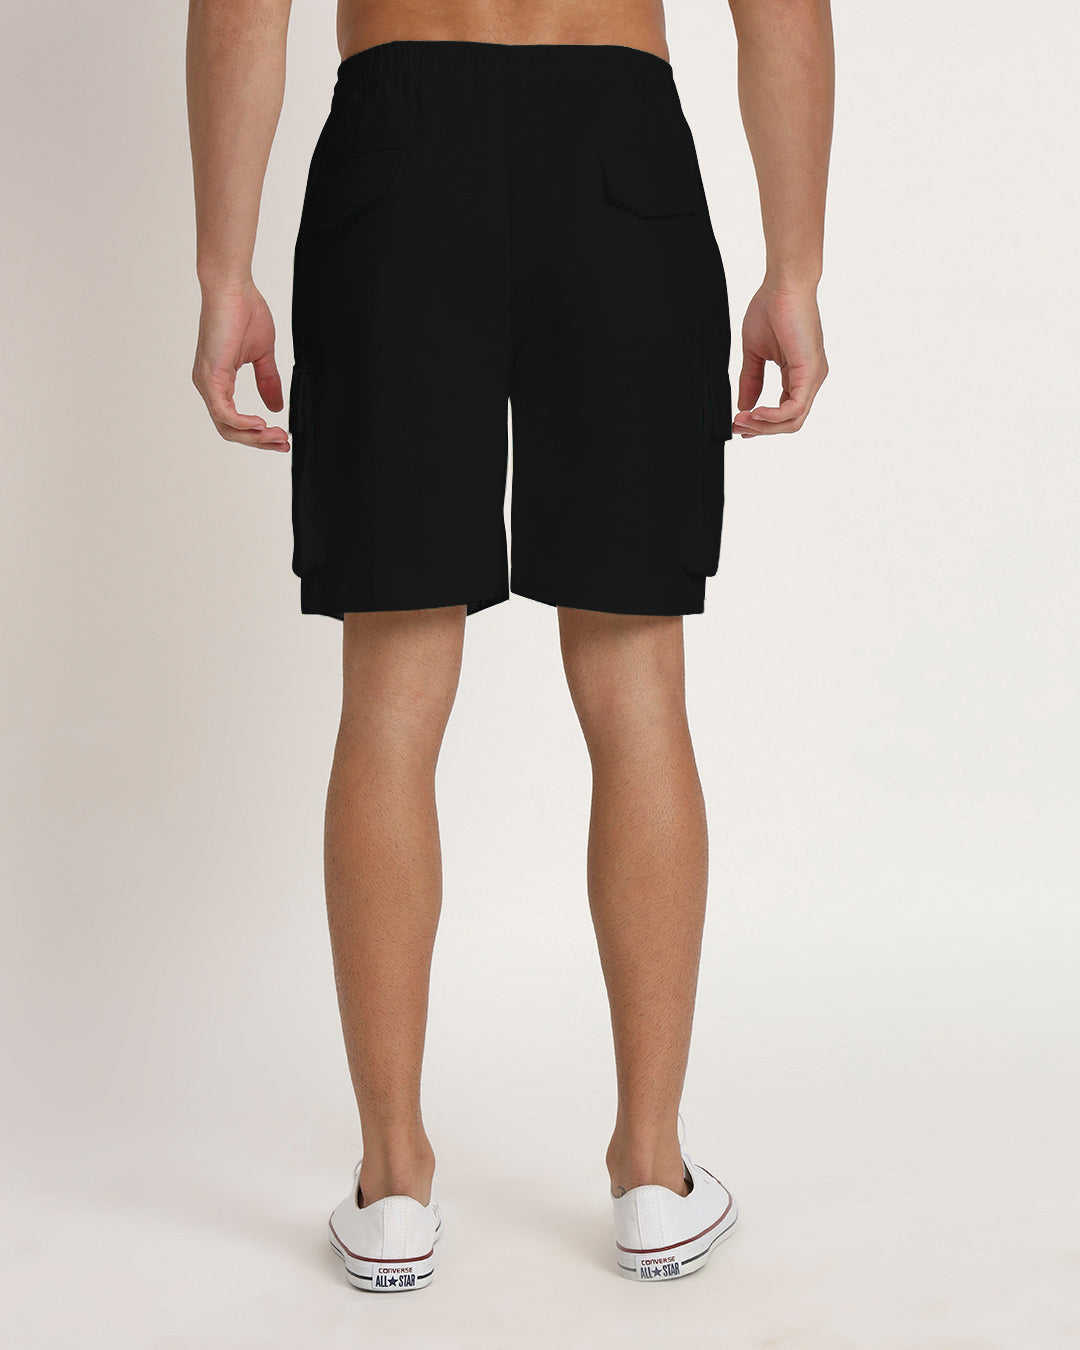 Slub Comfort Cargo Black Men's Shorts